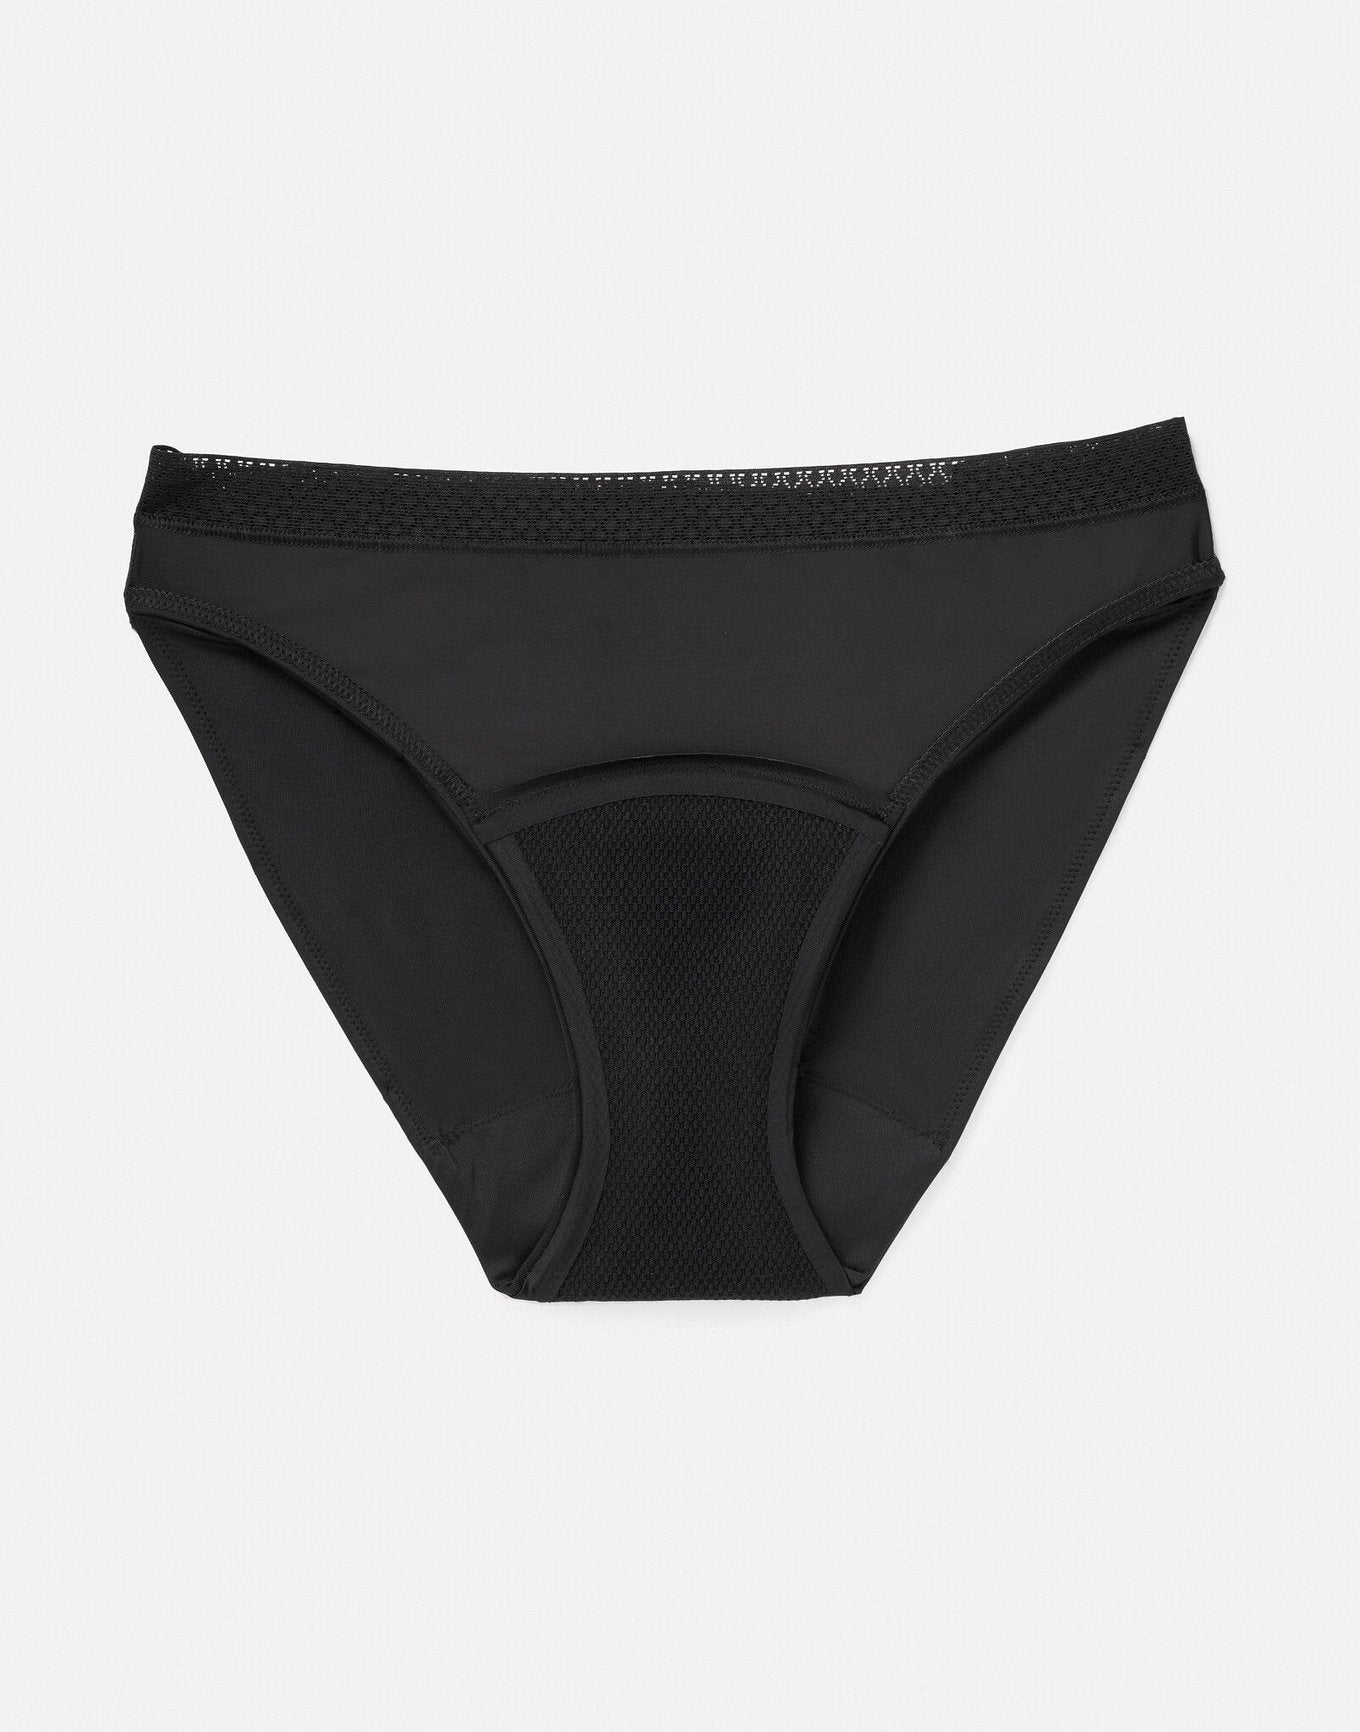 New Thinx Period Underwear For Tweens, Grey Size 11/12